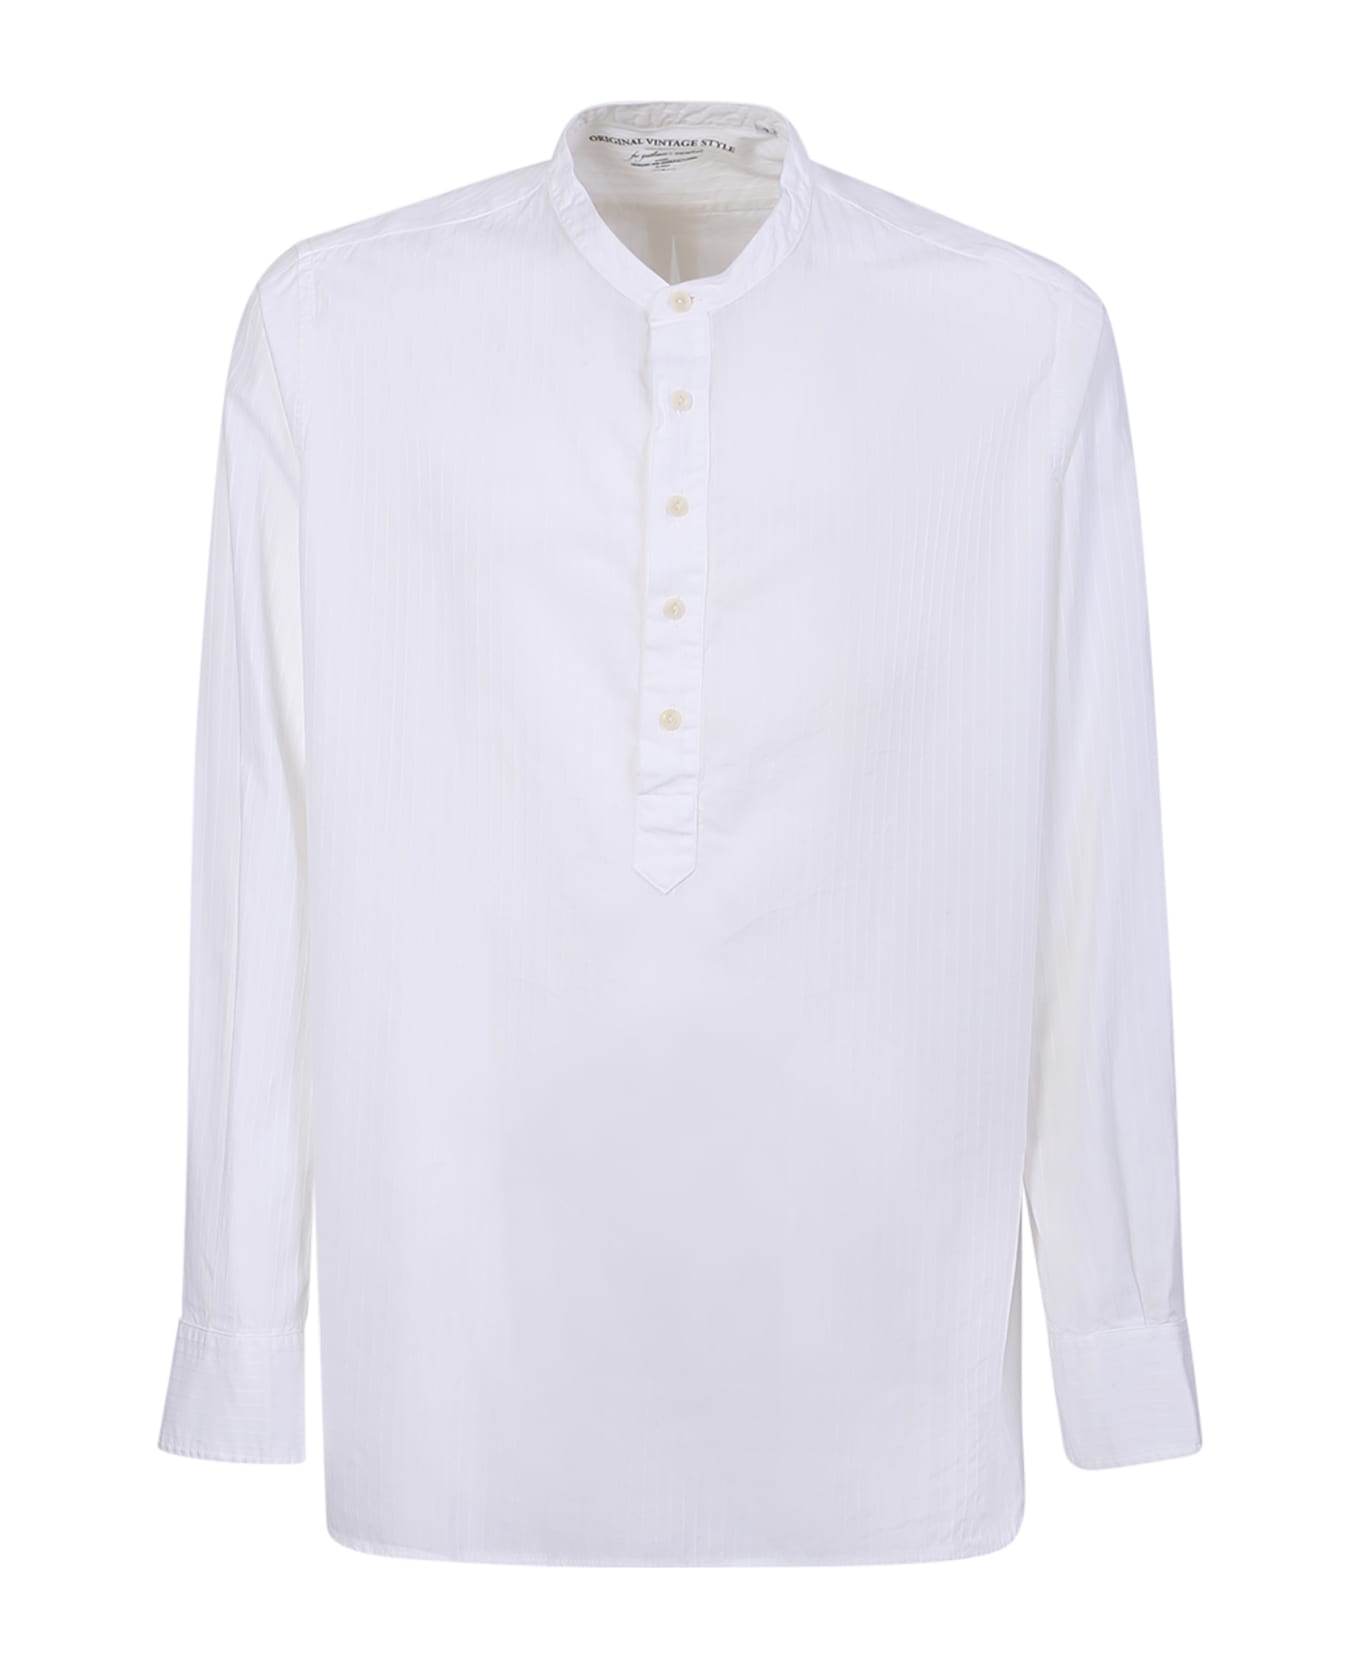 Original Vintage Style Korean Collar White Shirt - White